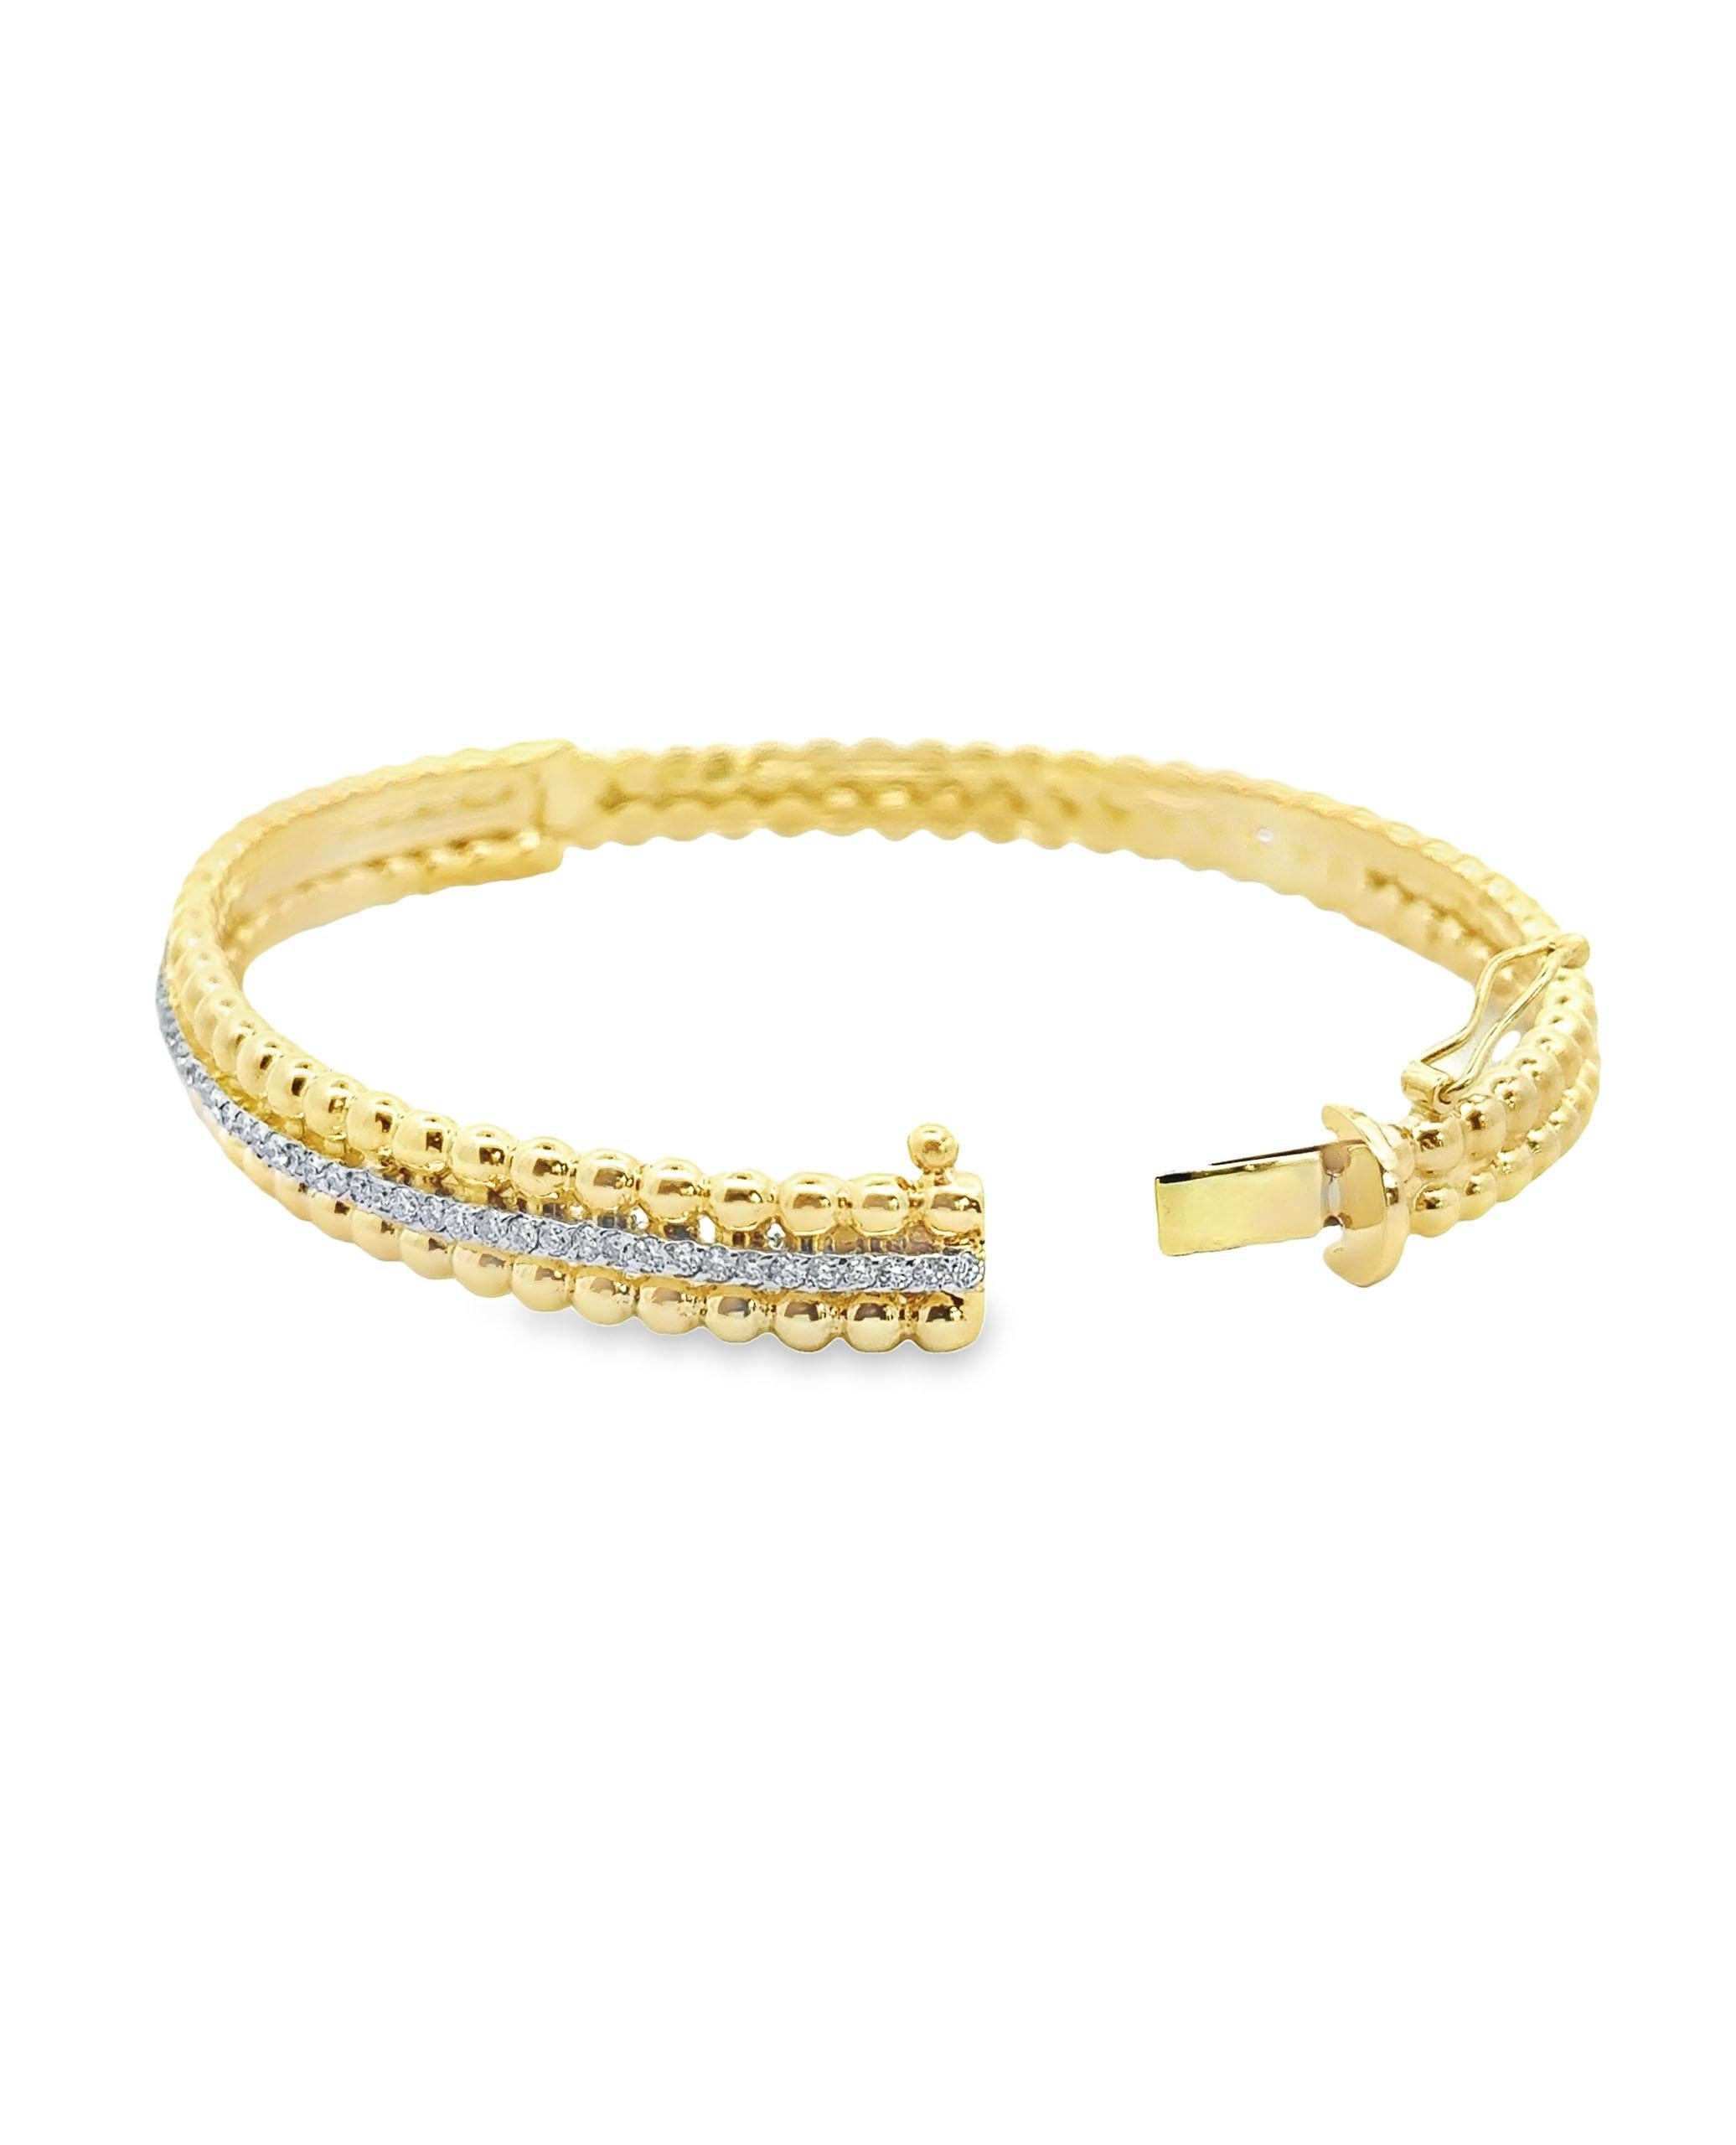 Bracelet à charnière en or jaune 14K avec un design perlé et une rangée de diamants ronds de taille brillant pesant 0,80 carats au total.

- Les diamants sont de couleur G/H et de pureté SI2.
- Convient à un poignet de 7 pouces.
- Fermoir de